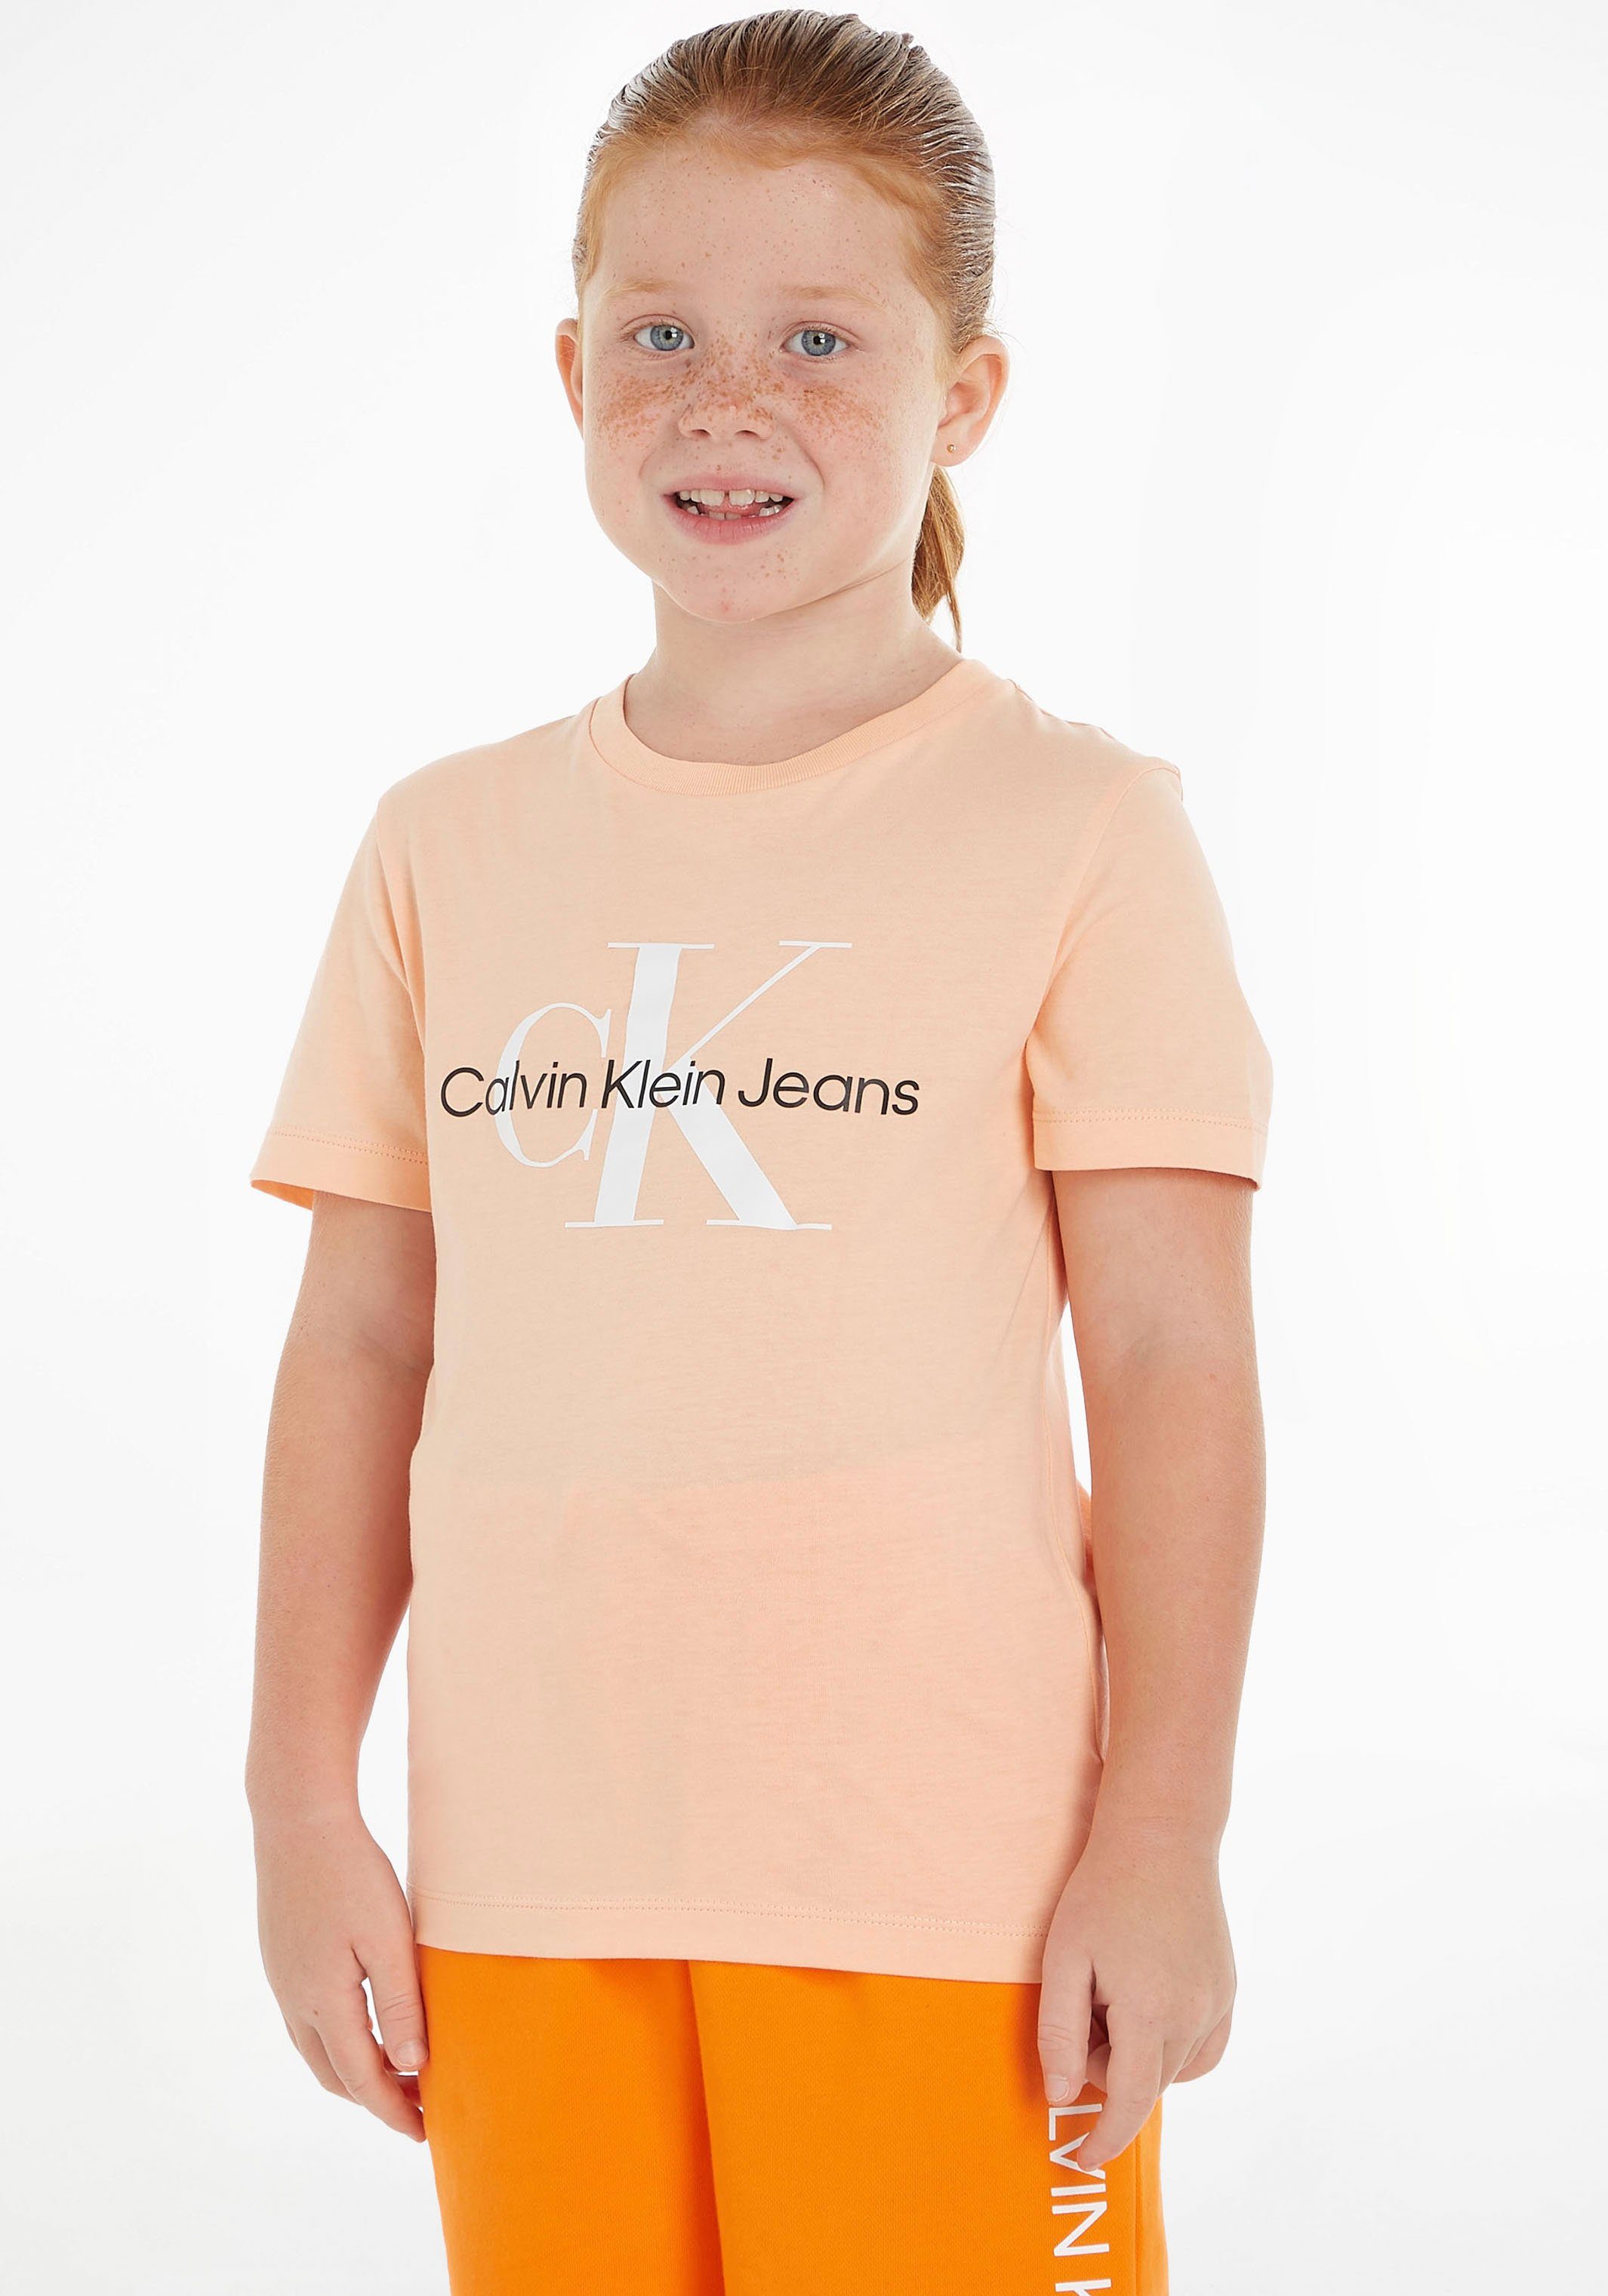 Jungen und T-Shirt Klein MiniMe,für Junior hellorange MONOGRAM Kids Kinder Jeans LOGO Calvin T-SHIRT Mädchen